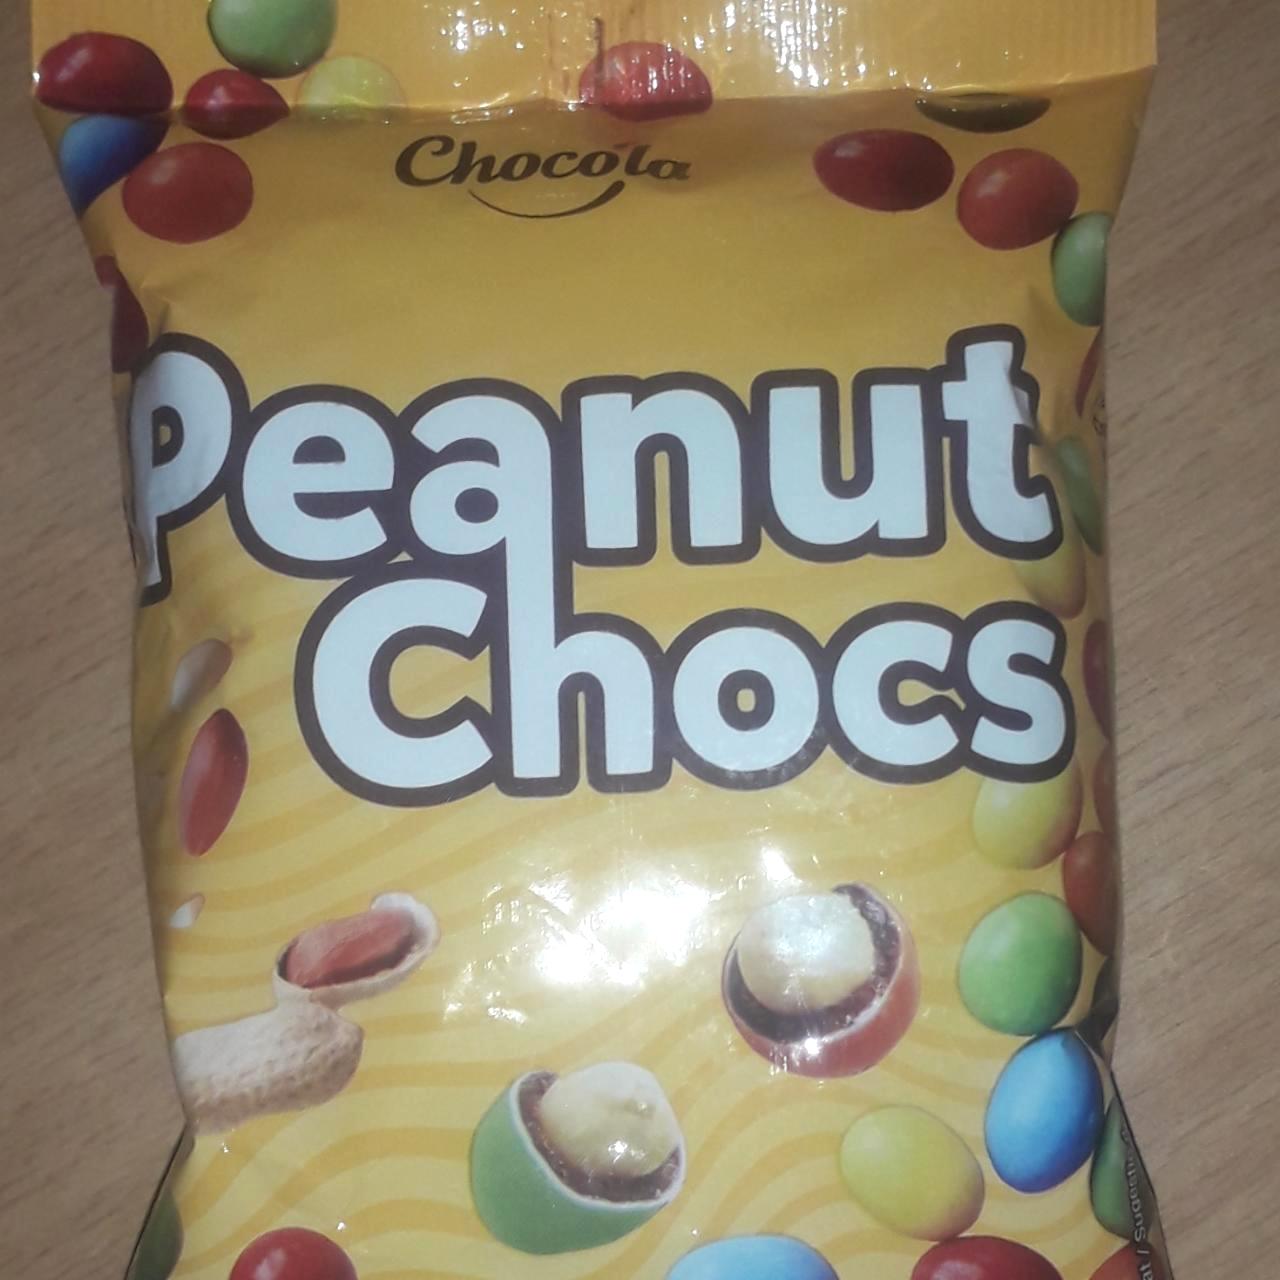 Képek - Peanut chocs Chocola